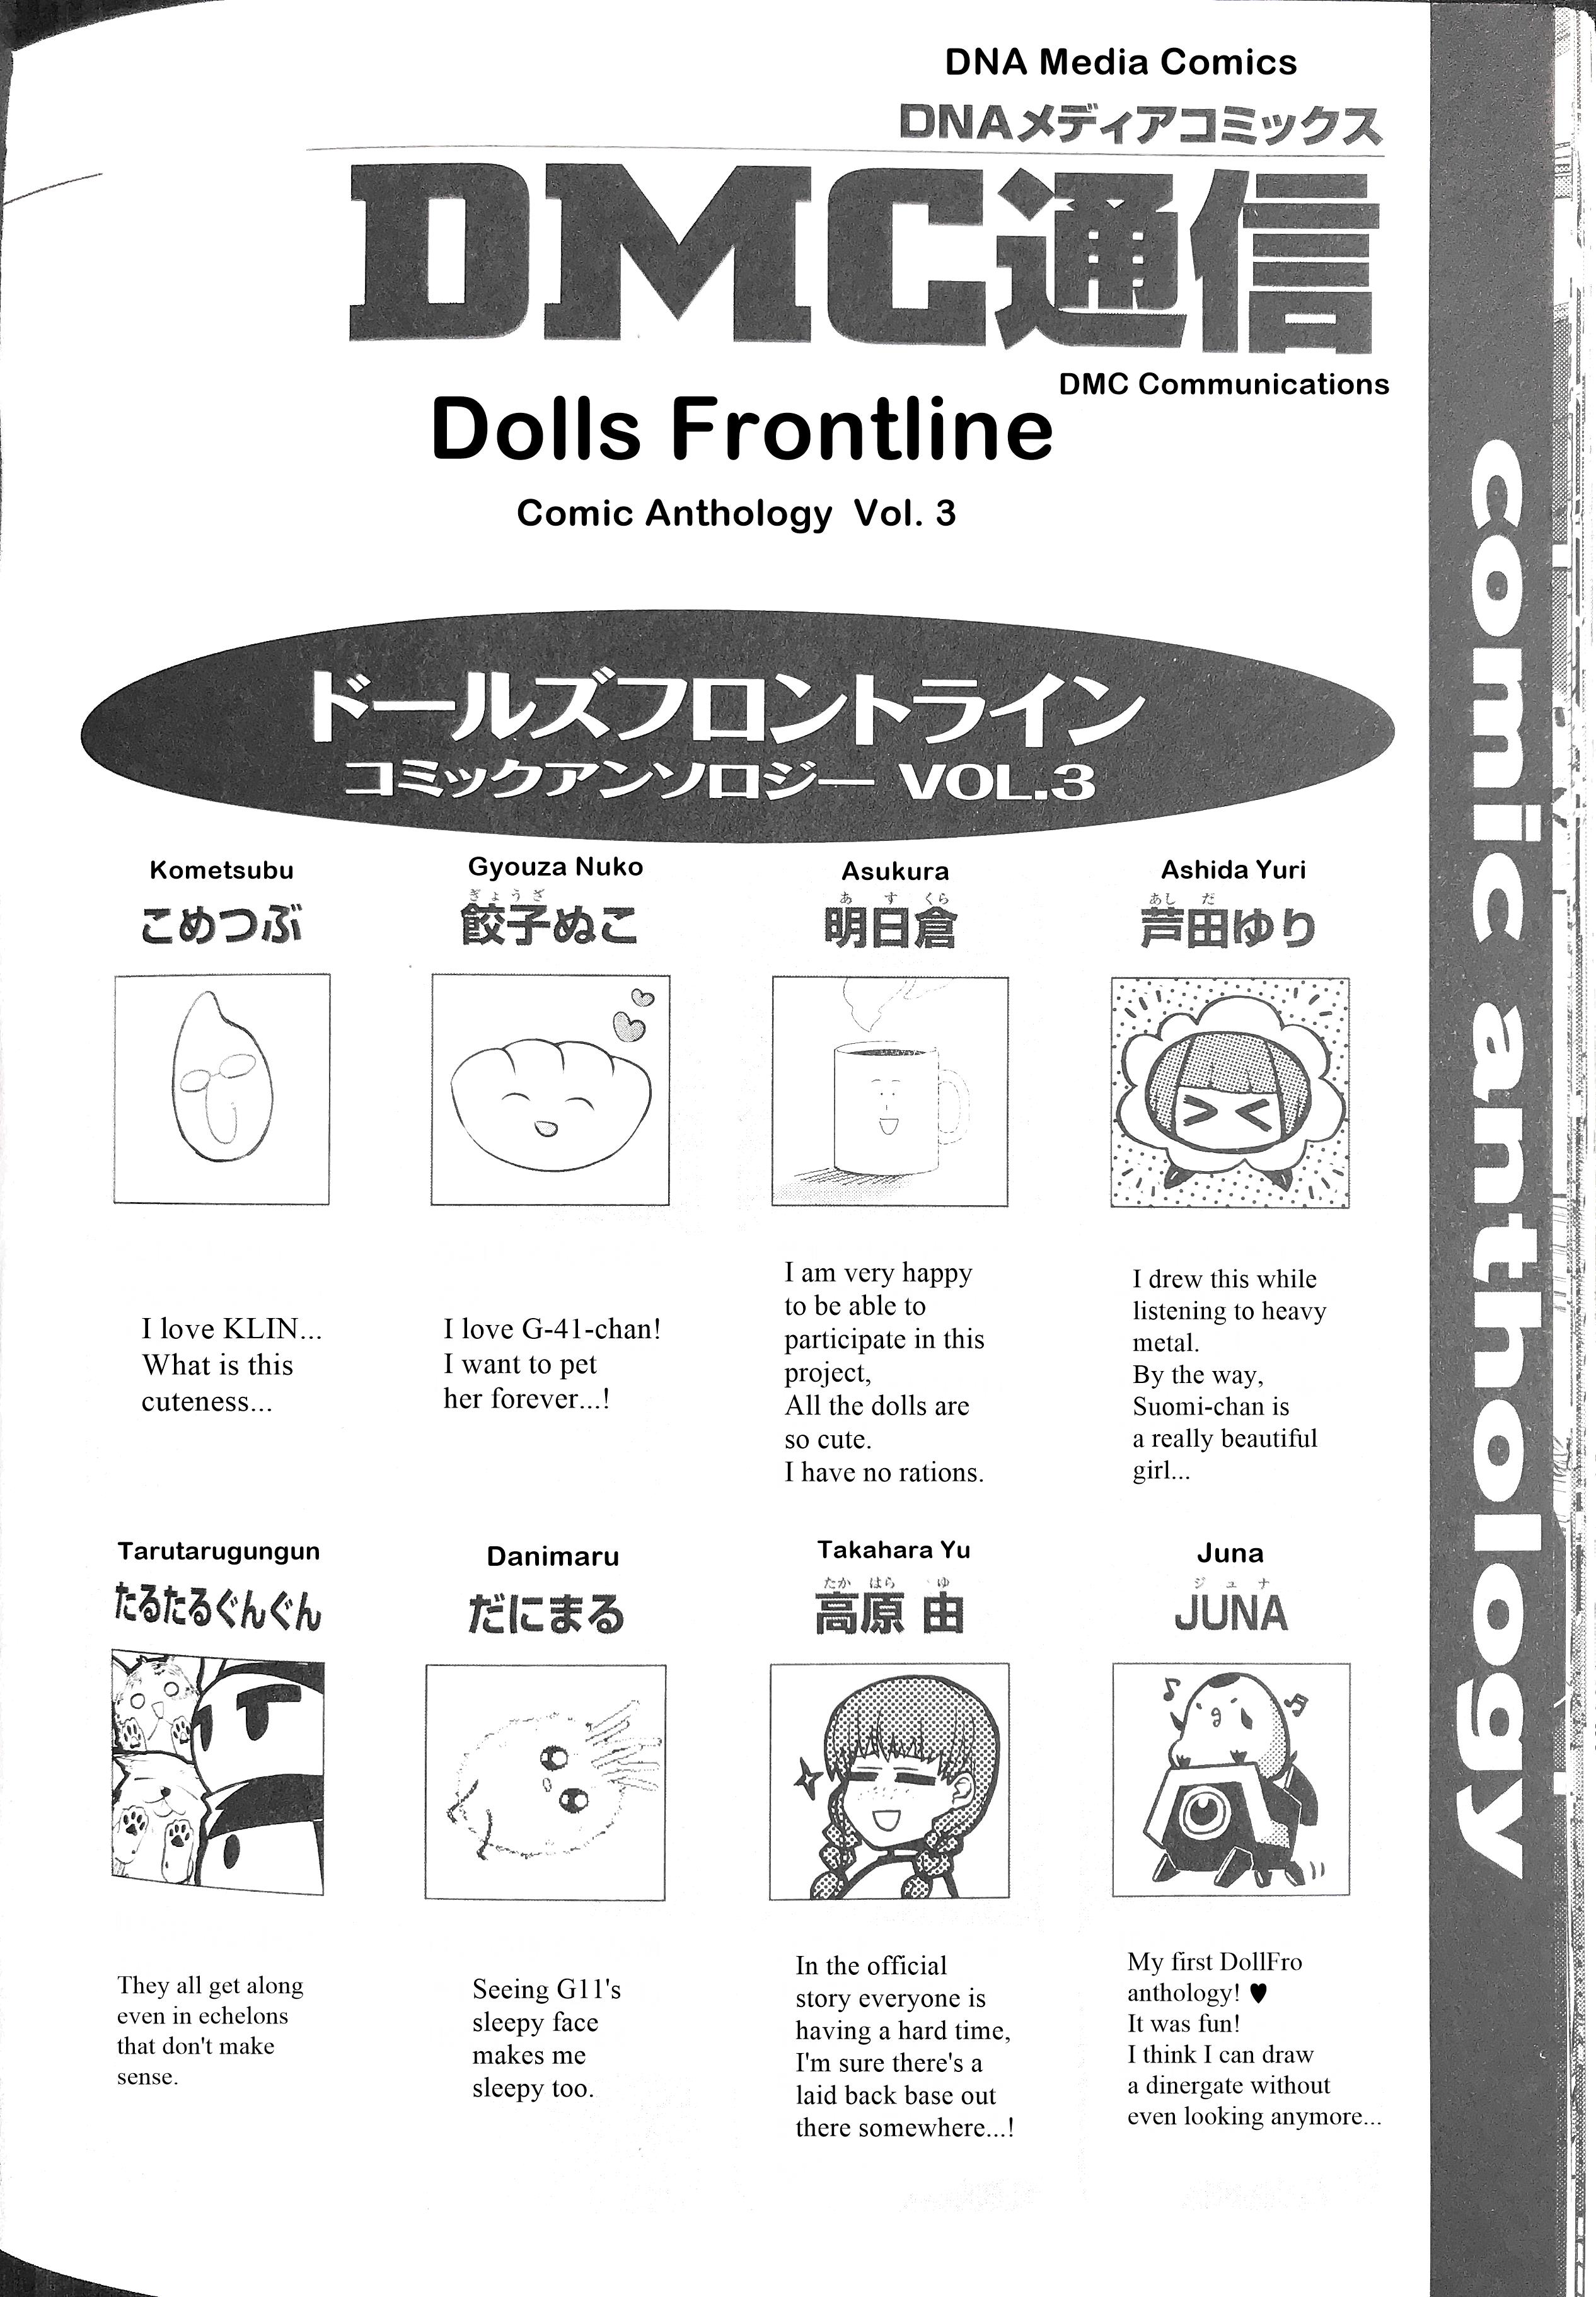 Dolls Frontline Comic Anthology - DNA Media 2019 - Chapter 31749 - Volume 3 Artist Comments - Image 1